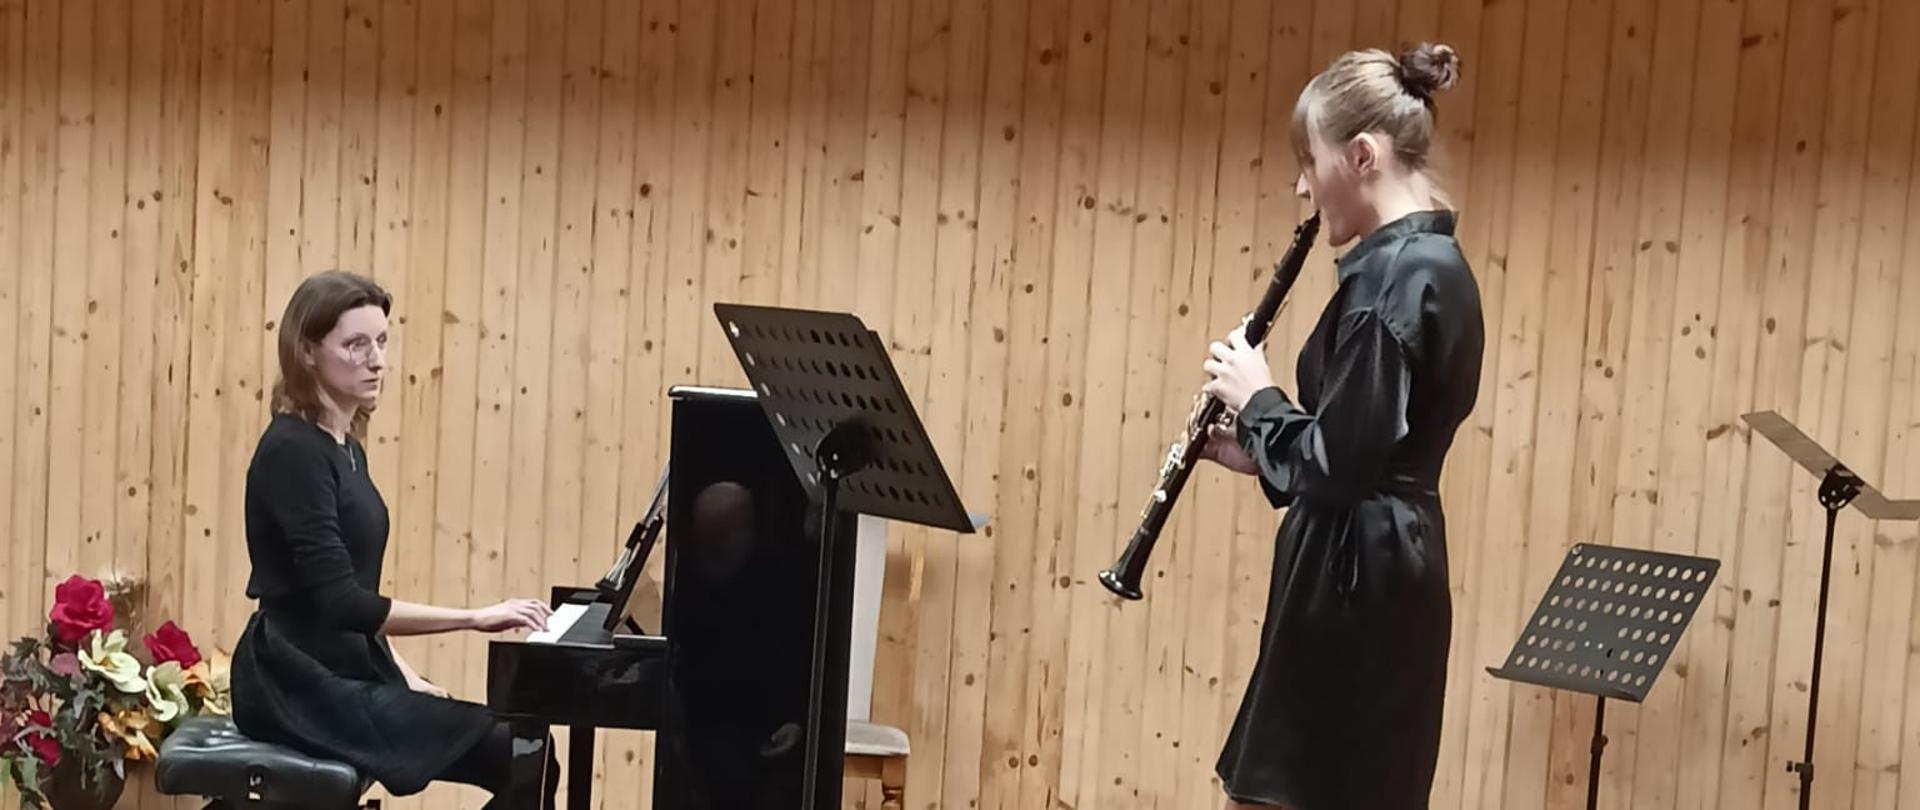 Nastolatka gra na klarnecie, po lewej stronie kobieta gra na pianinie.